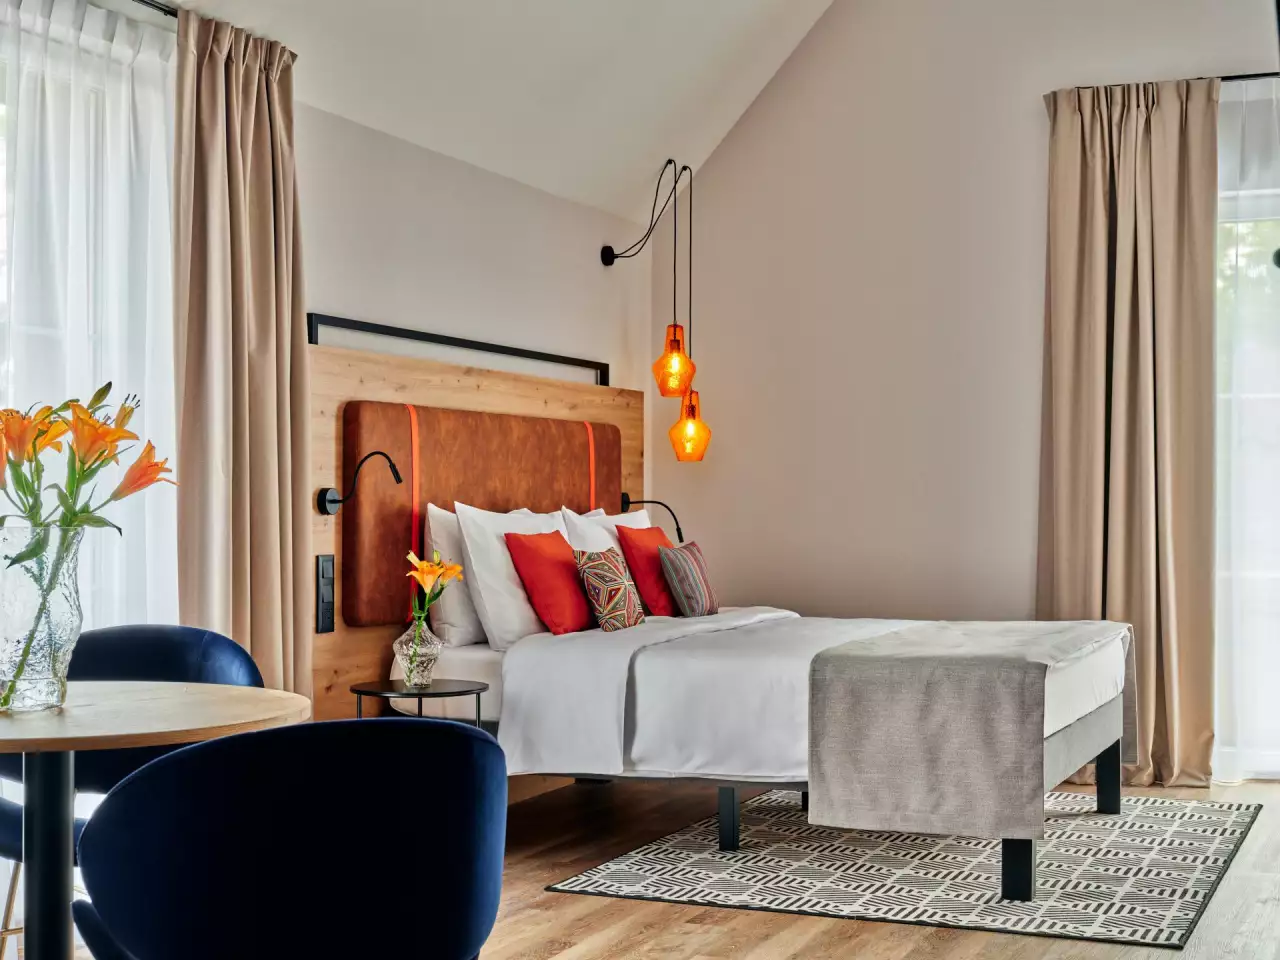 W hotelu znajduje się 140 przestronnych i komfortowych apartamentów, urządzone są w nowoczesnym stylu.